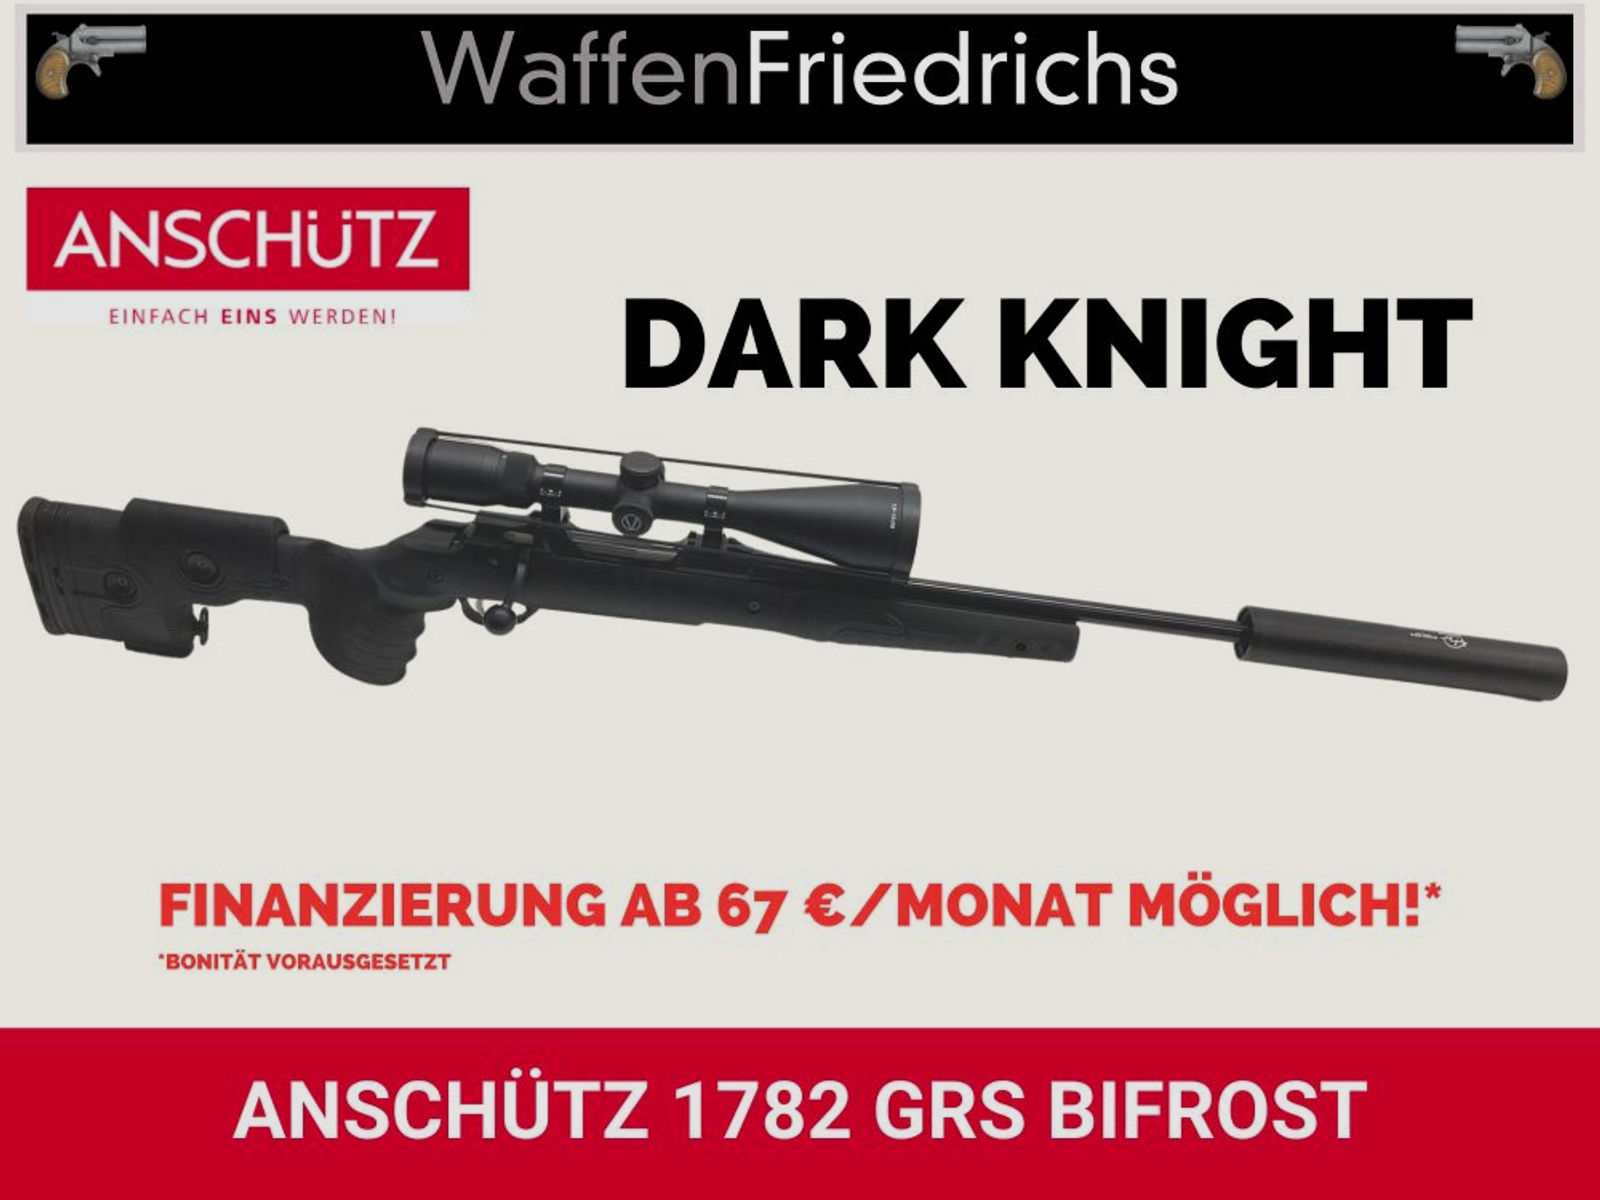 Anschütz	 1782 GRS Bifrost | Dark Knight Komplettangebot Jungjäger - Waffen Friedrichs